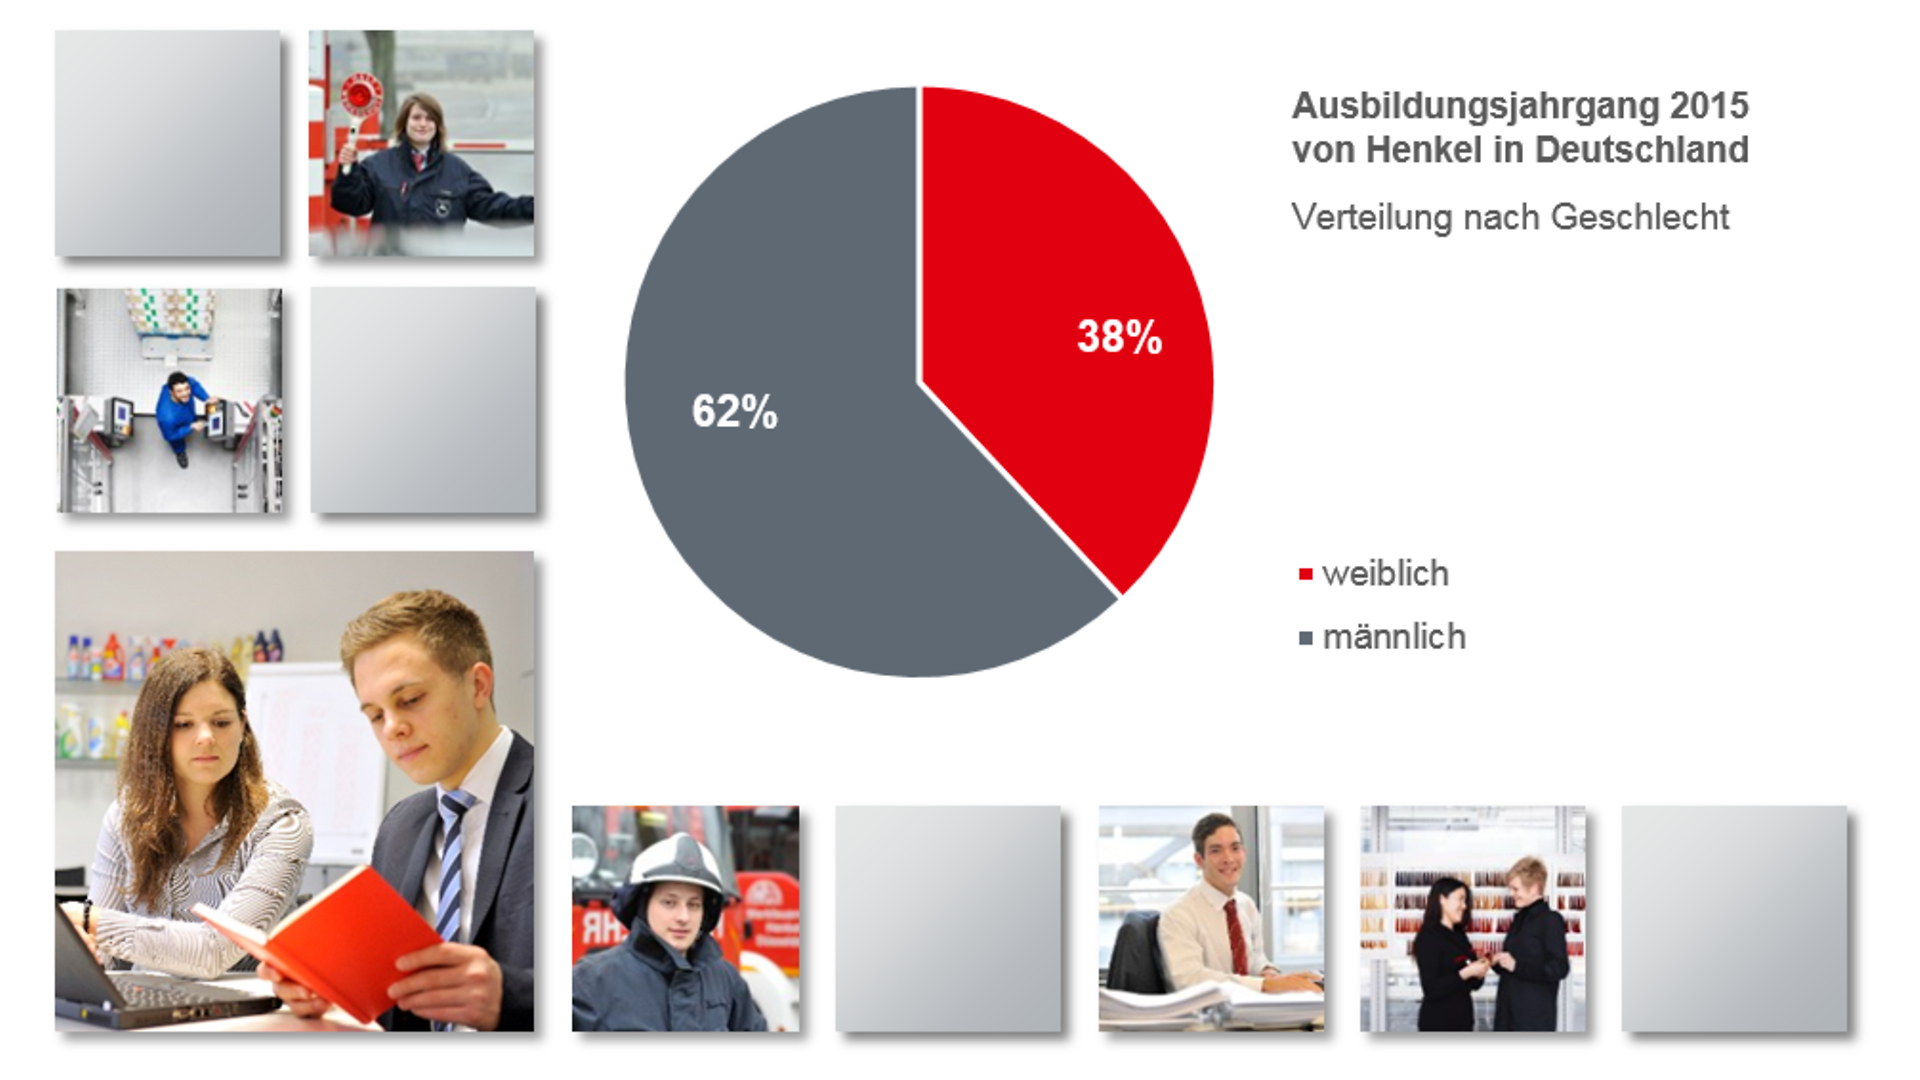 
Verteilung nach Geschlecht im Ausbildungsjahrgang 2015 von Henkel in Deutschland